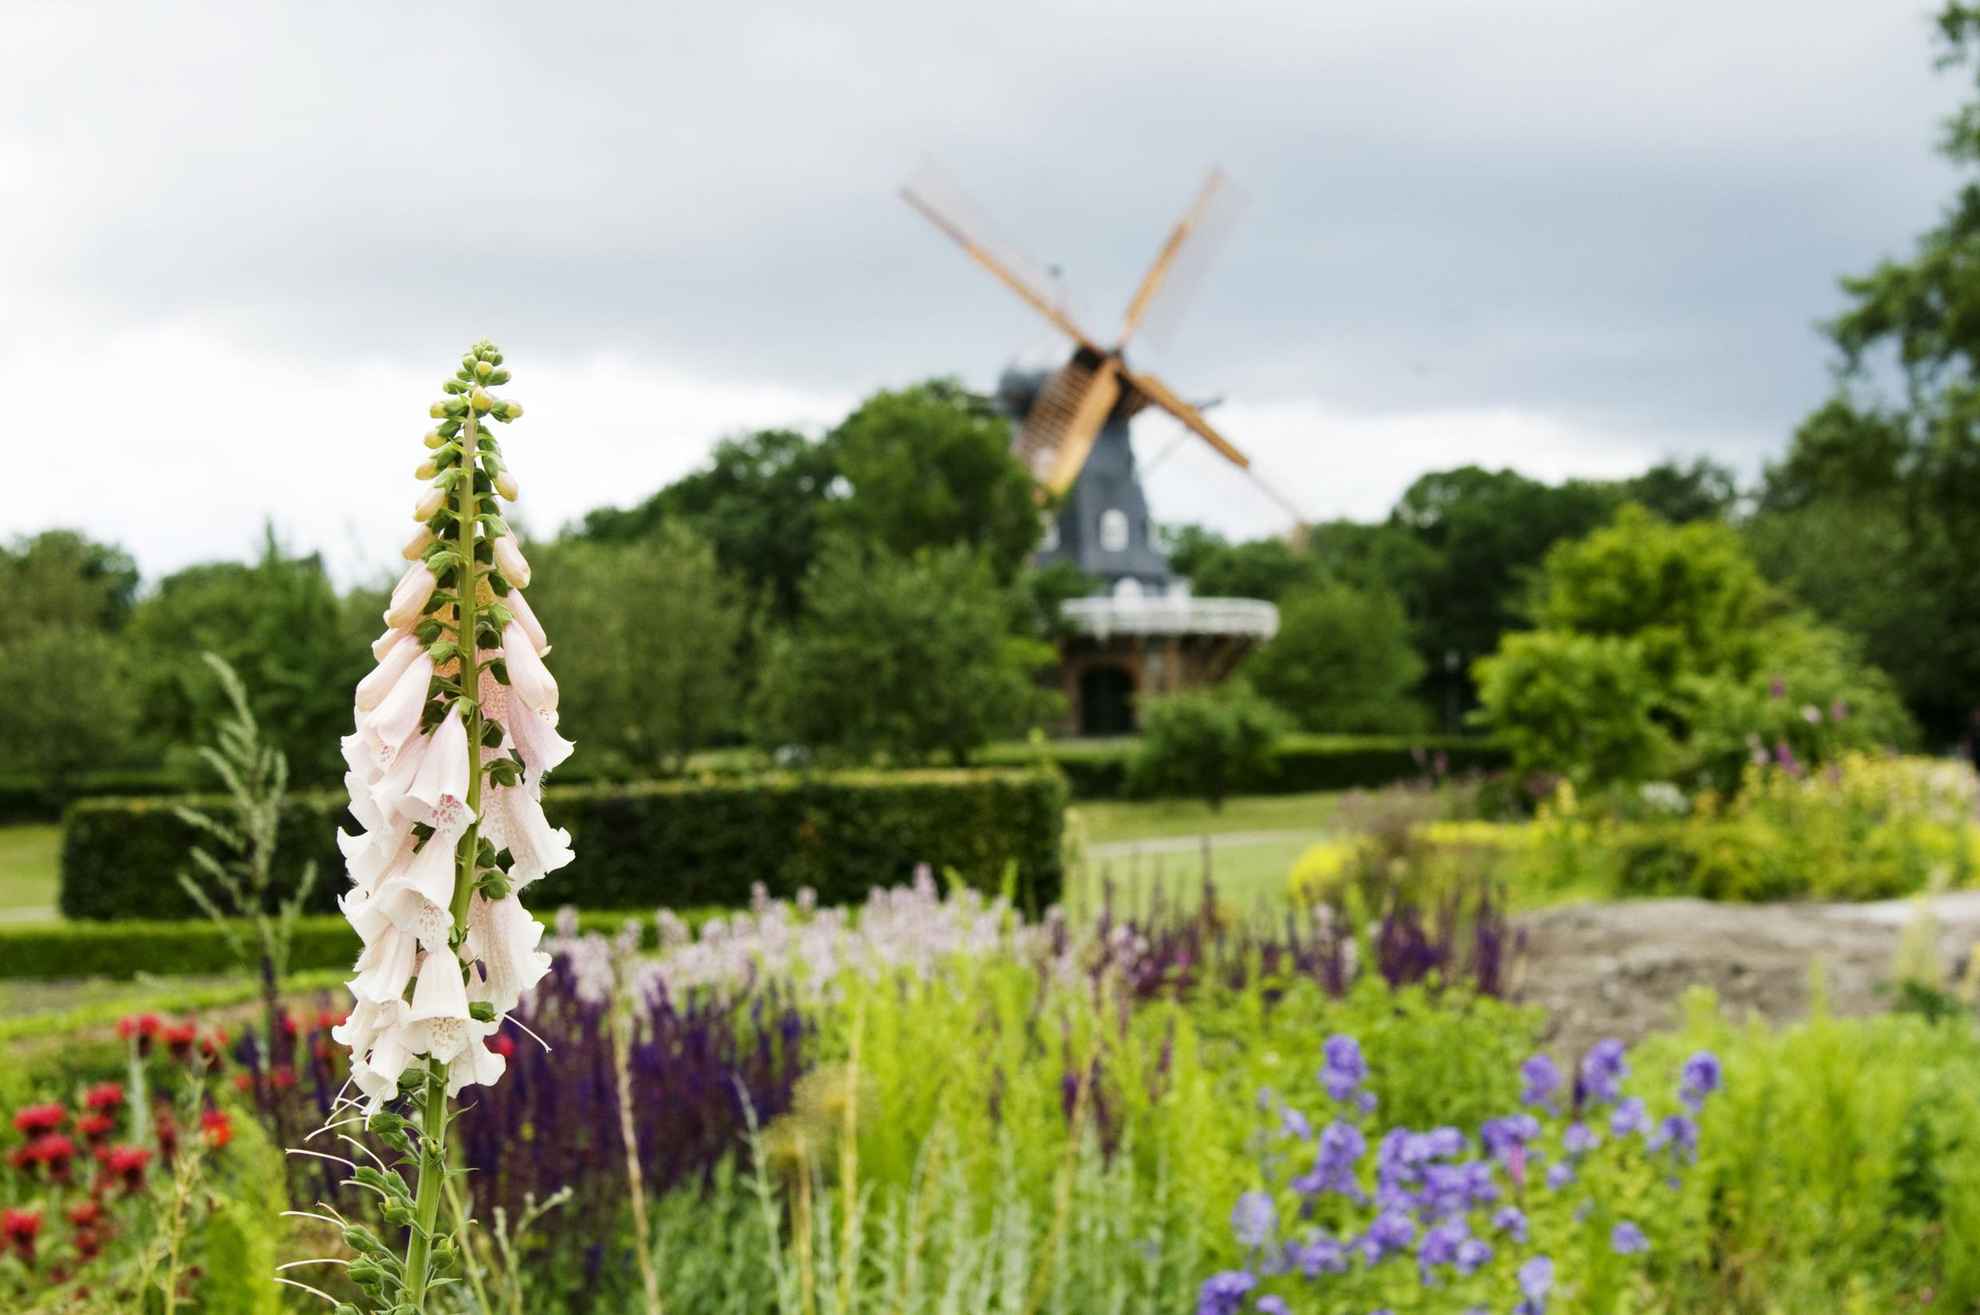 Ein Fingerhut und weitere Pflanzen in einem Park. Eine Windmühle im Hintergrund.